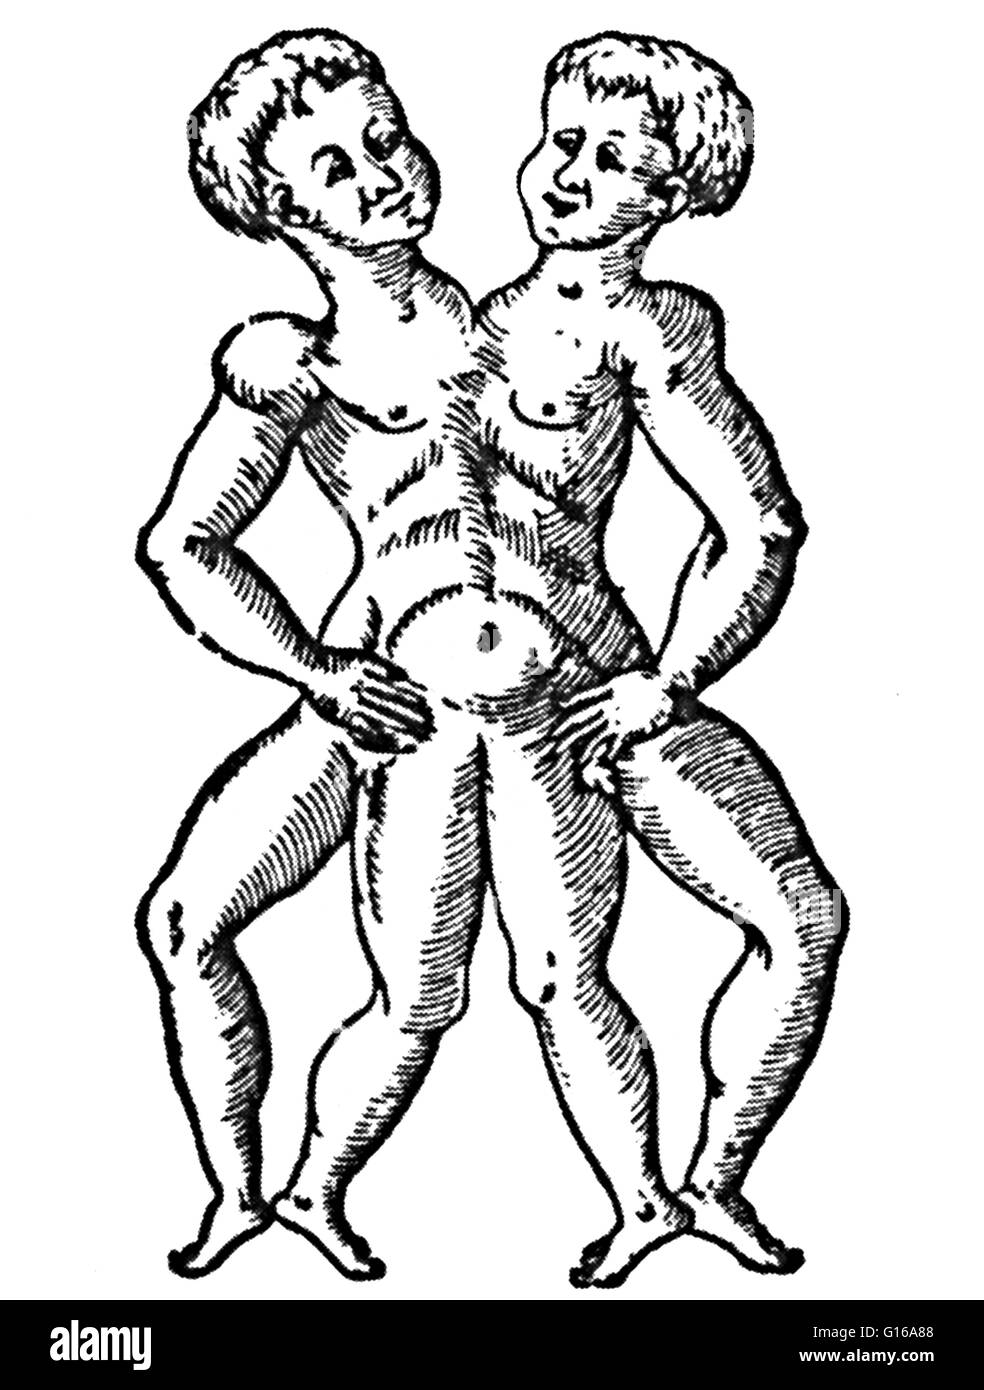 Gravure sur bois de jumeaux siamois de Des Monstres et prodiges d'Ambroise Paré, 1573. Jumeaux siamois sont de vrais jumeaux nés avec leur corps s'est joint à un moment et d'avoir plus ou moins de résidus de duplication, un résultat de la division incomplète du Banque D'Images